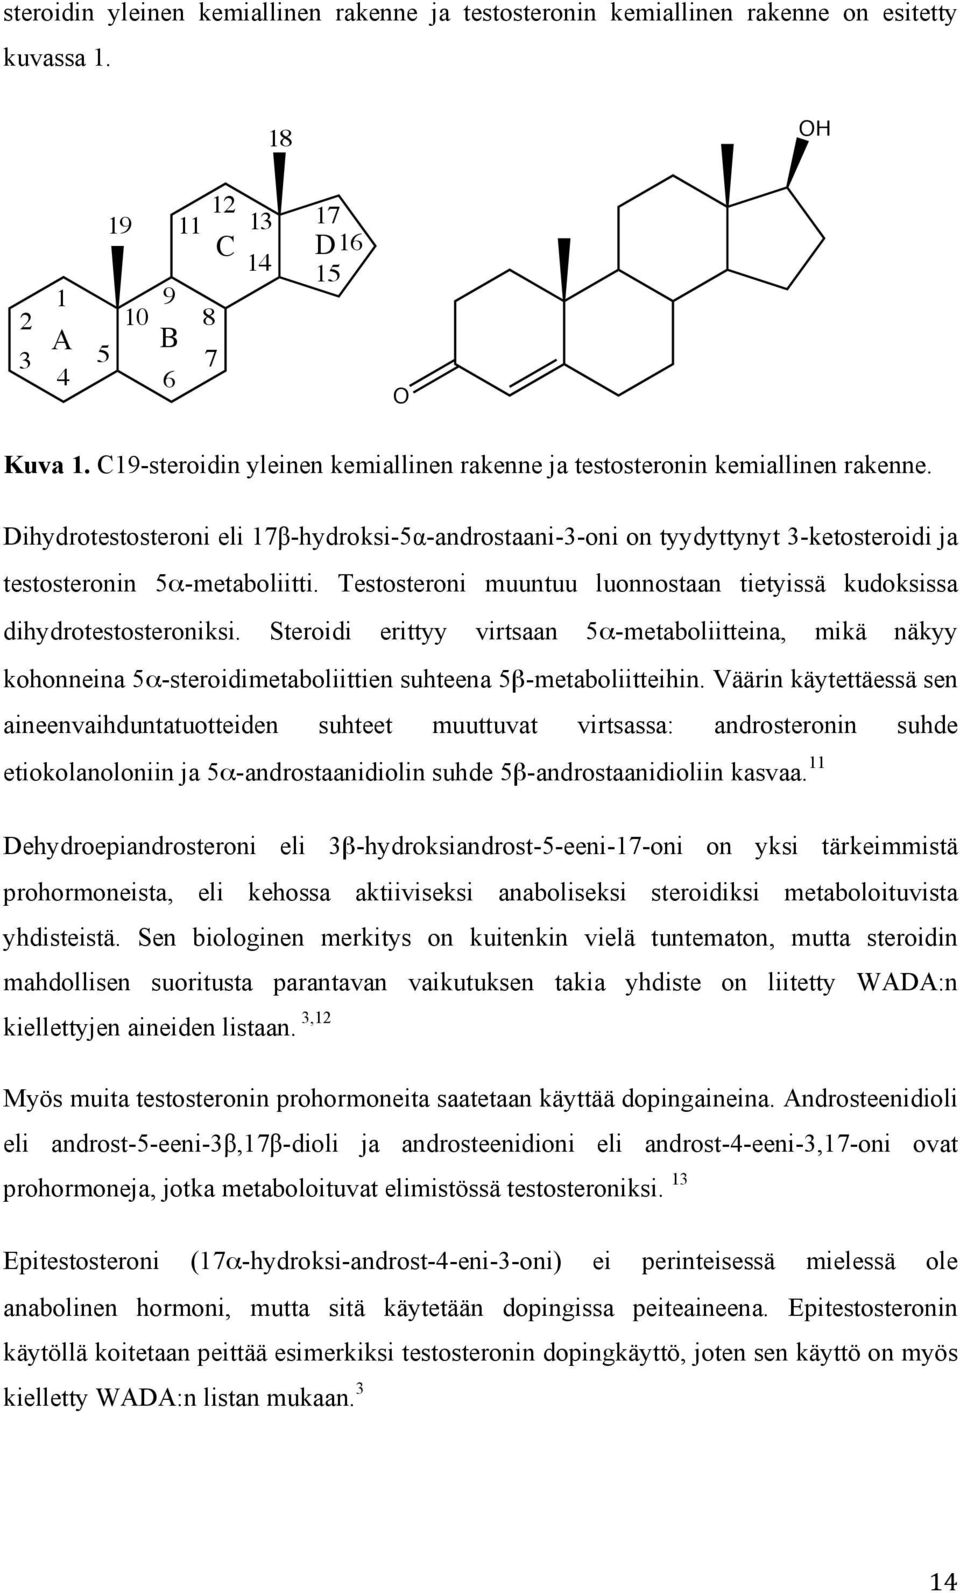 Dihydrotestosteroni eli 17β-hydroksi-5α-androstaani-3-oni on tyydyttynyt 3-ketosteroidi ja testosteronin 5α-metaboliitti. Testosteroni muuntuu luonnostaan tietyissä kudoksissa dihydrotestosteroniksi.